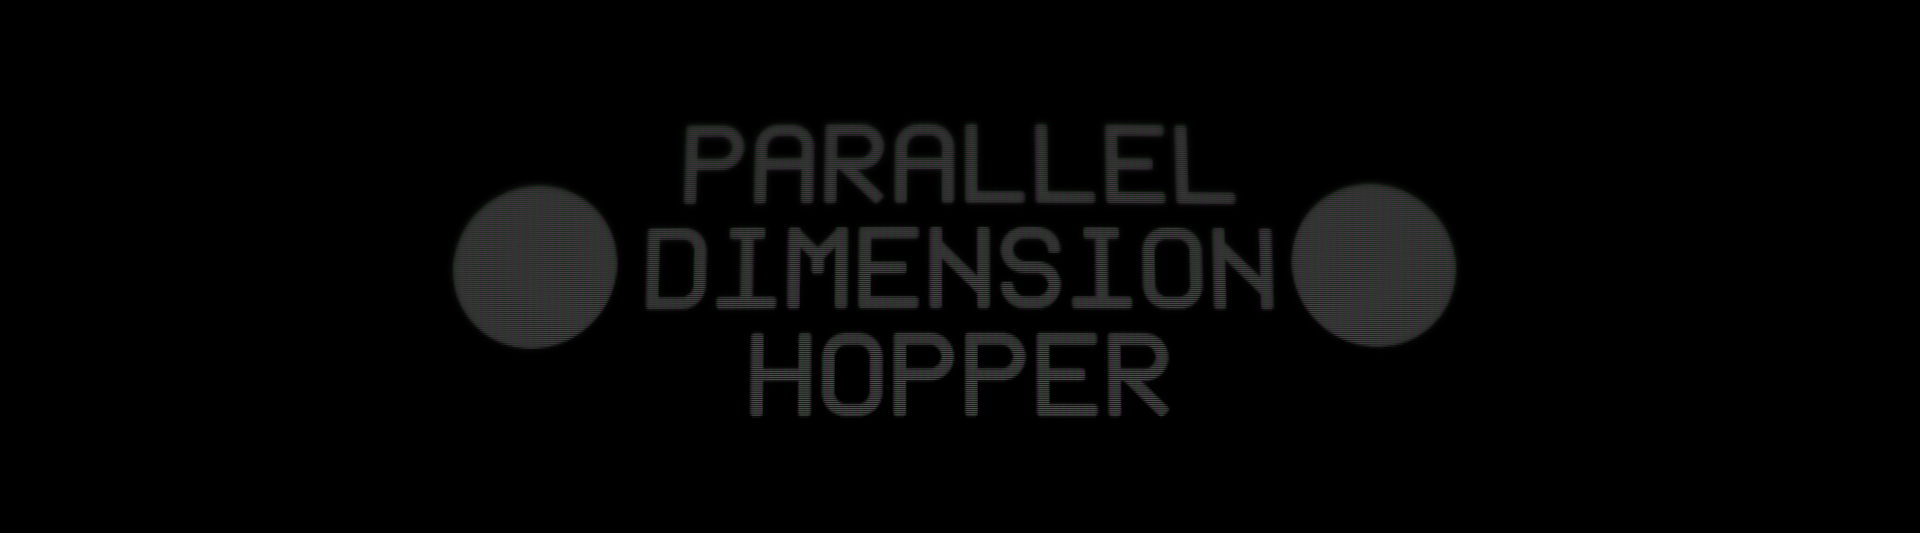 Parallel Dimension Hopper